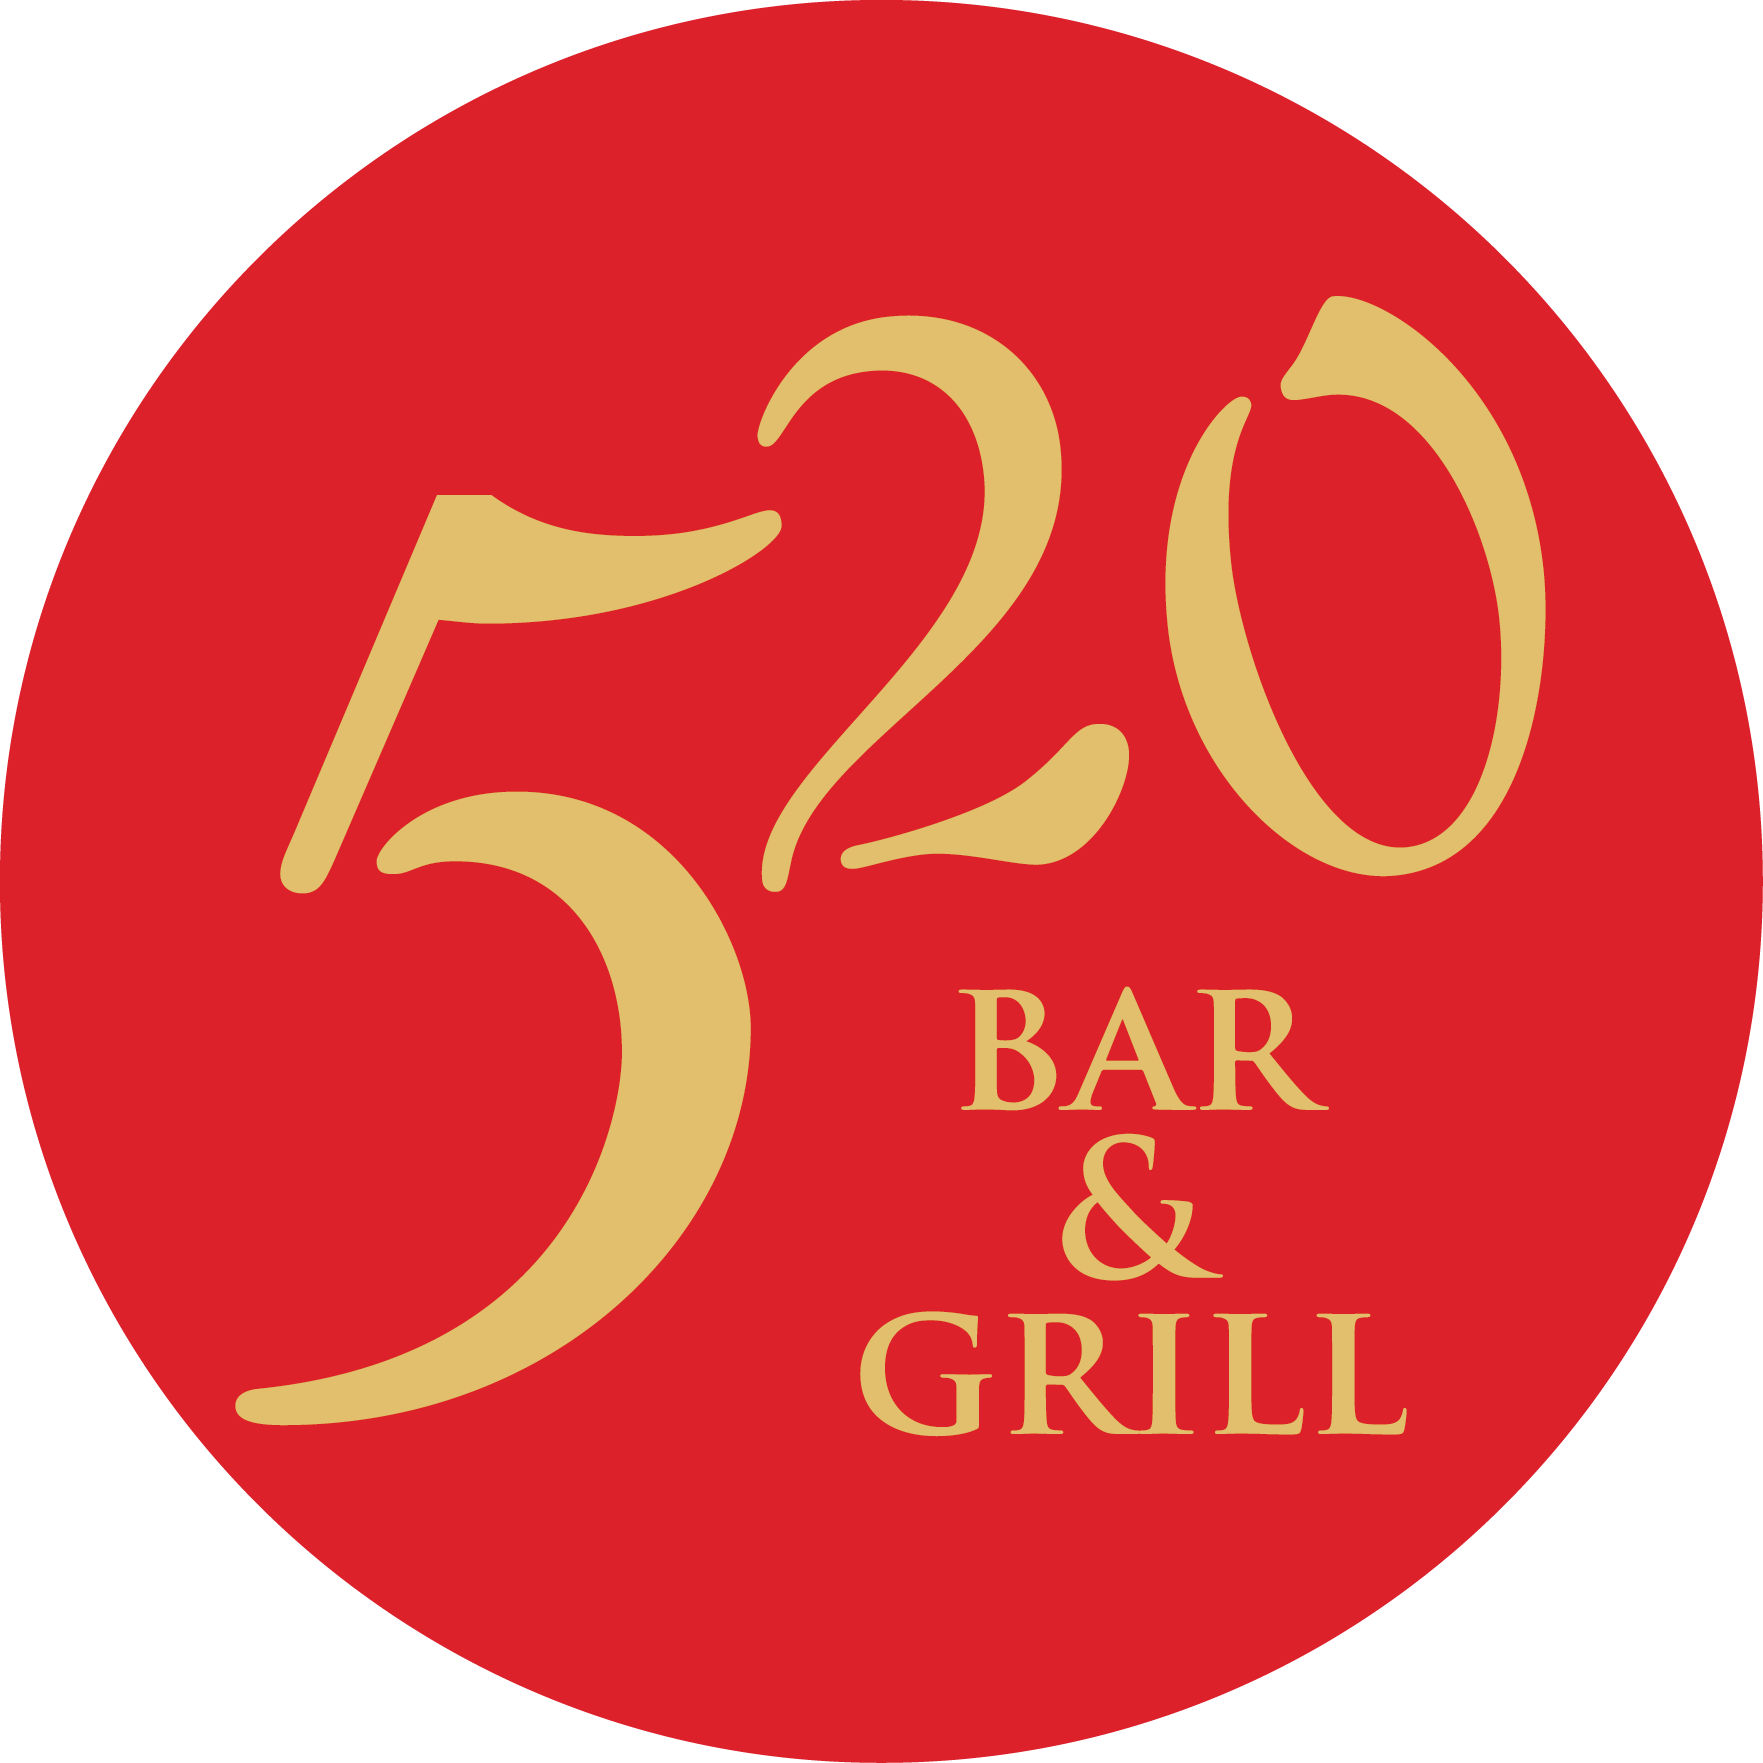 Company logo of 520 Bar & Grill